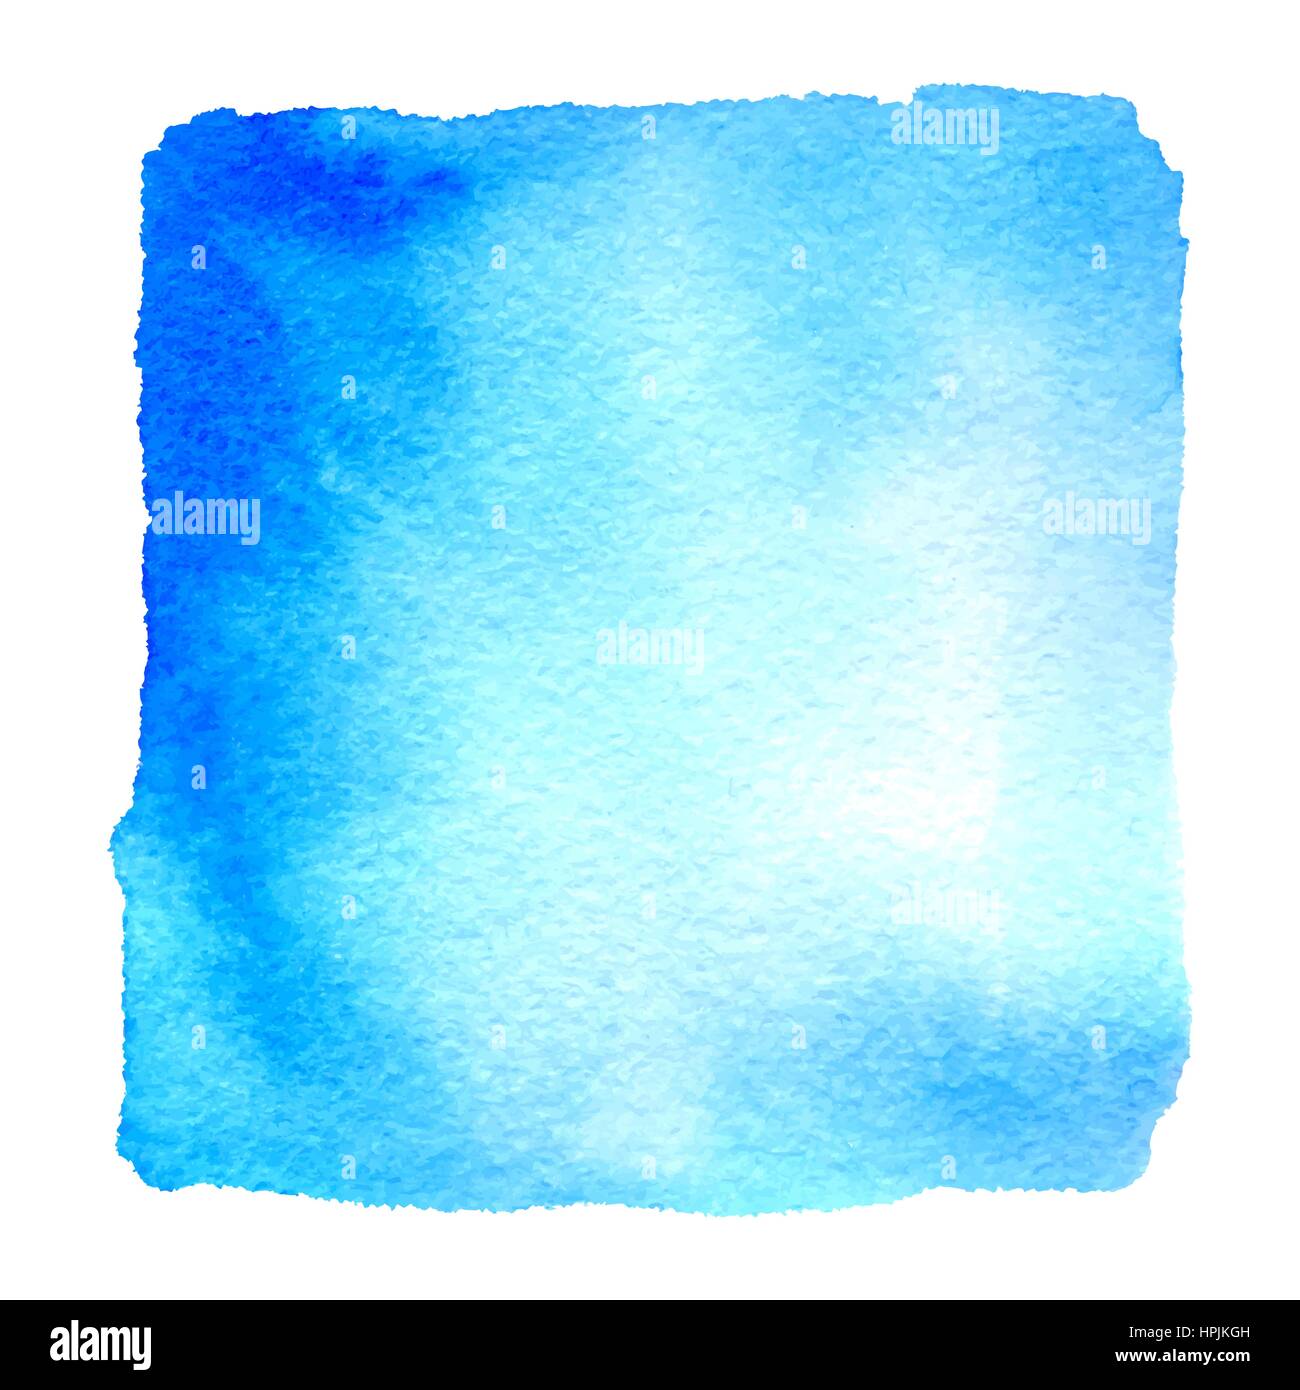 Leichte blaue Aquarell Hand gezeichneten Banner. Vektor Aquarell Papierstruktur strukturierten Hintergrund. Abstrakte Hand malen Platz Fleck isoliert auf weißem backgr Stock Vektor